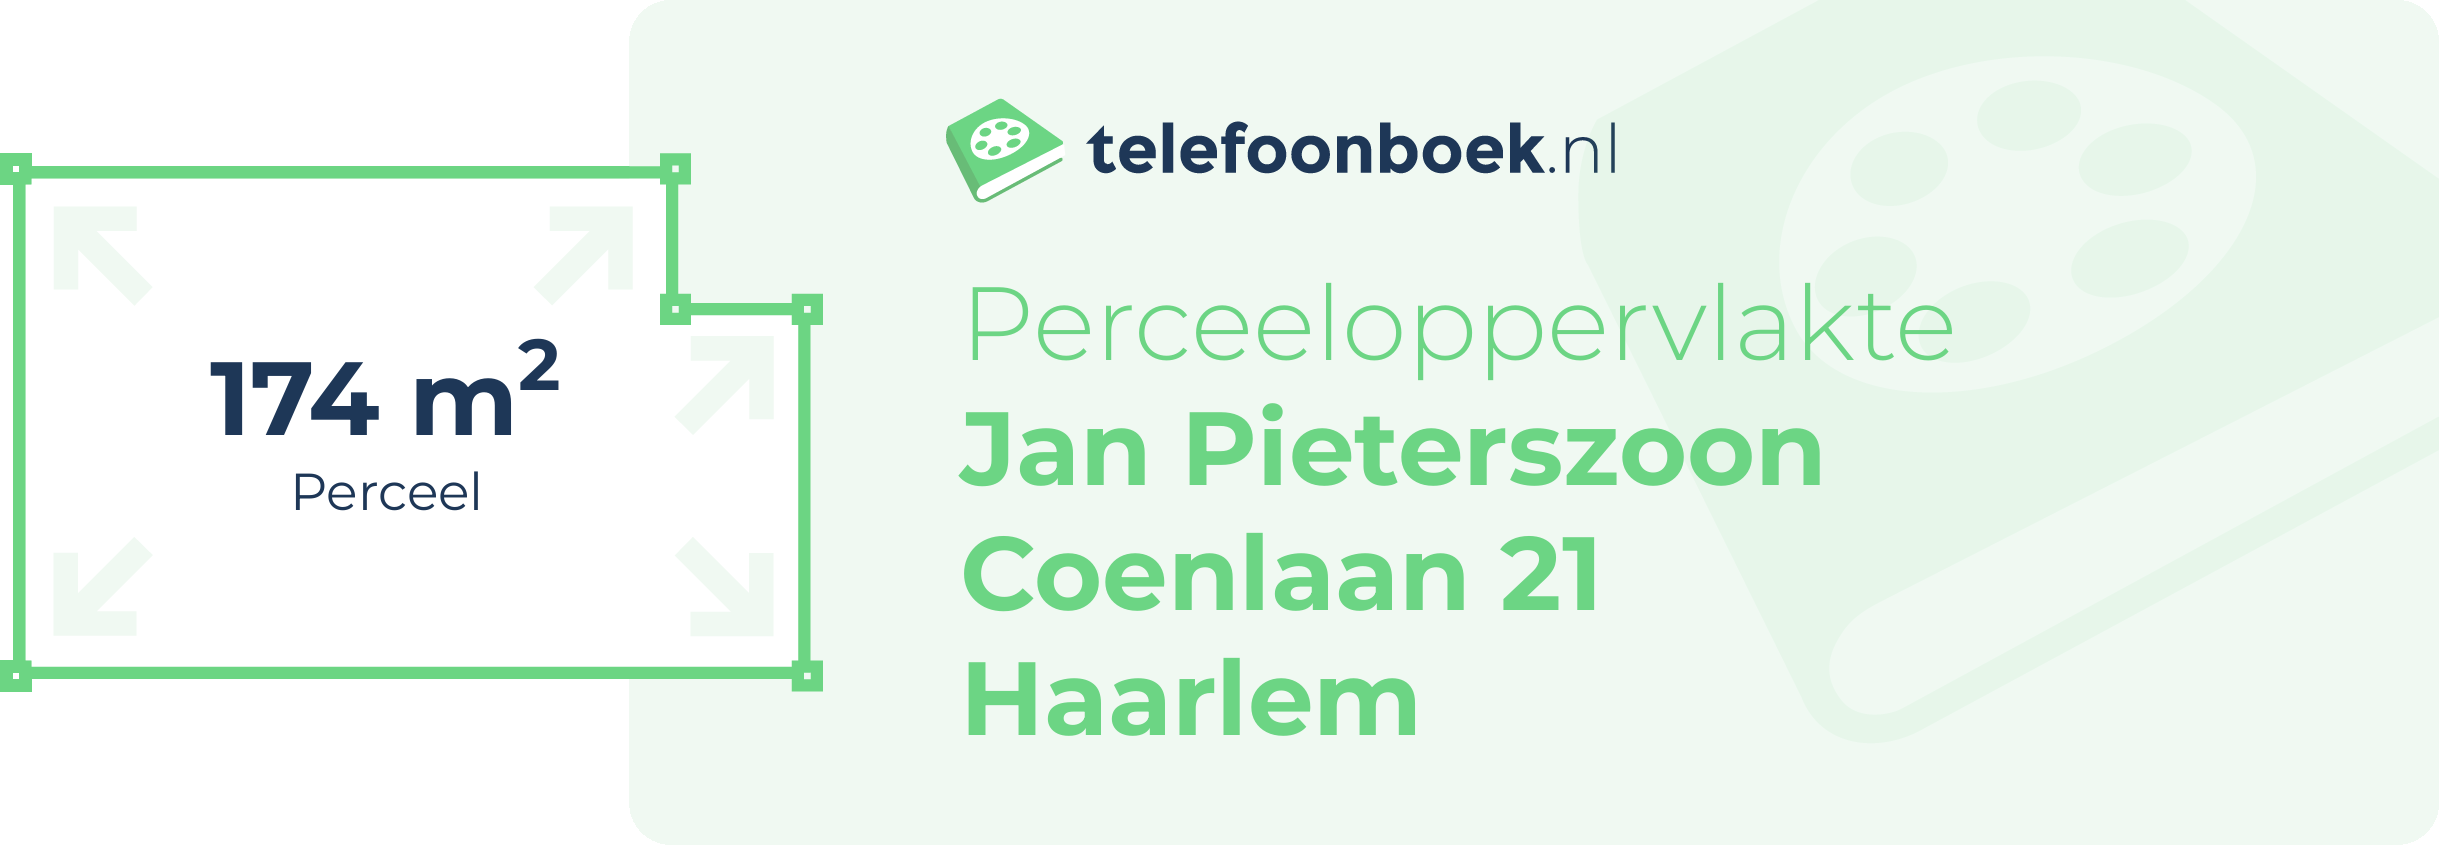 Perceeloppervlakte Jan Pieterszoon Coenlaan 21 Haarlem